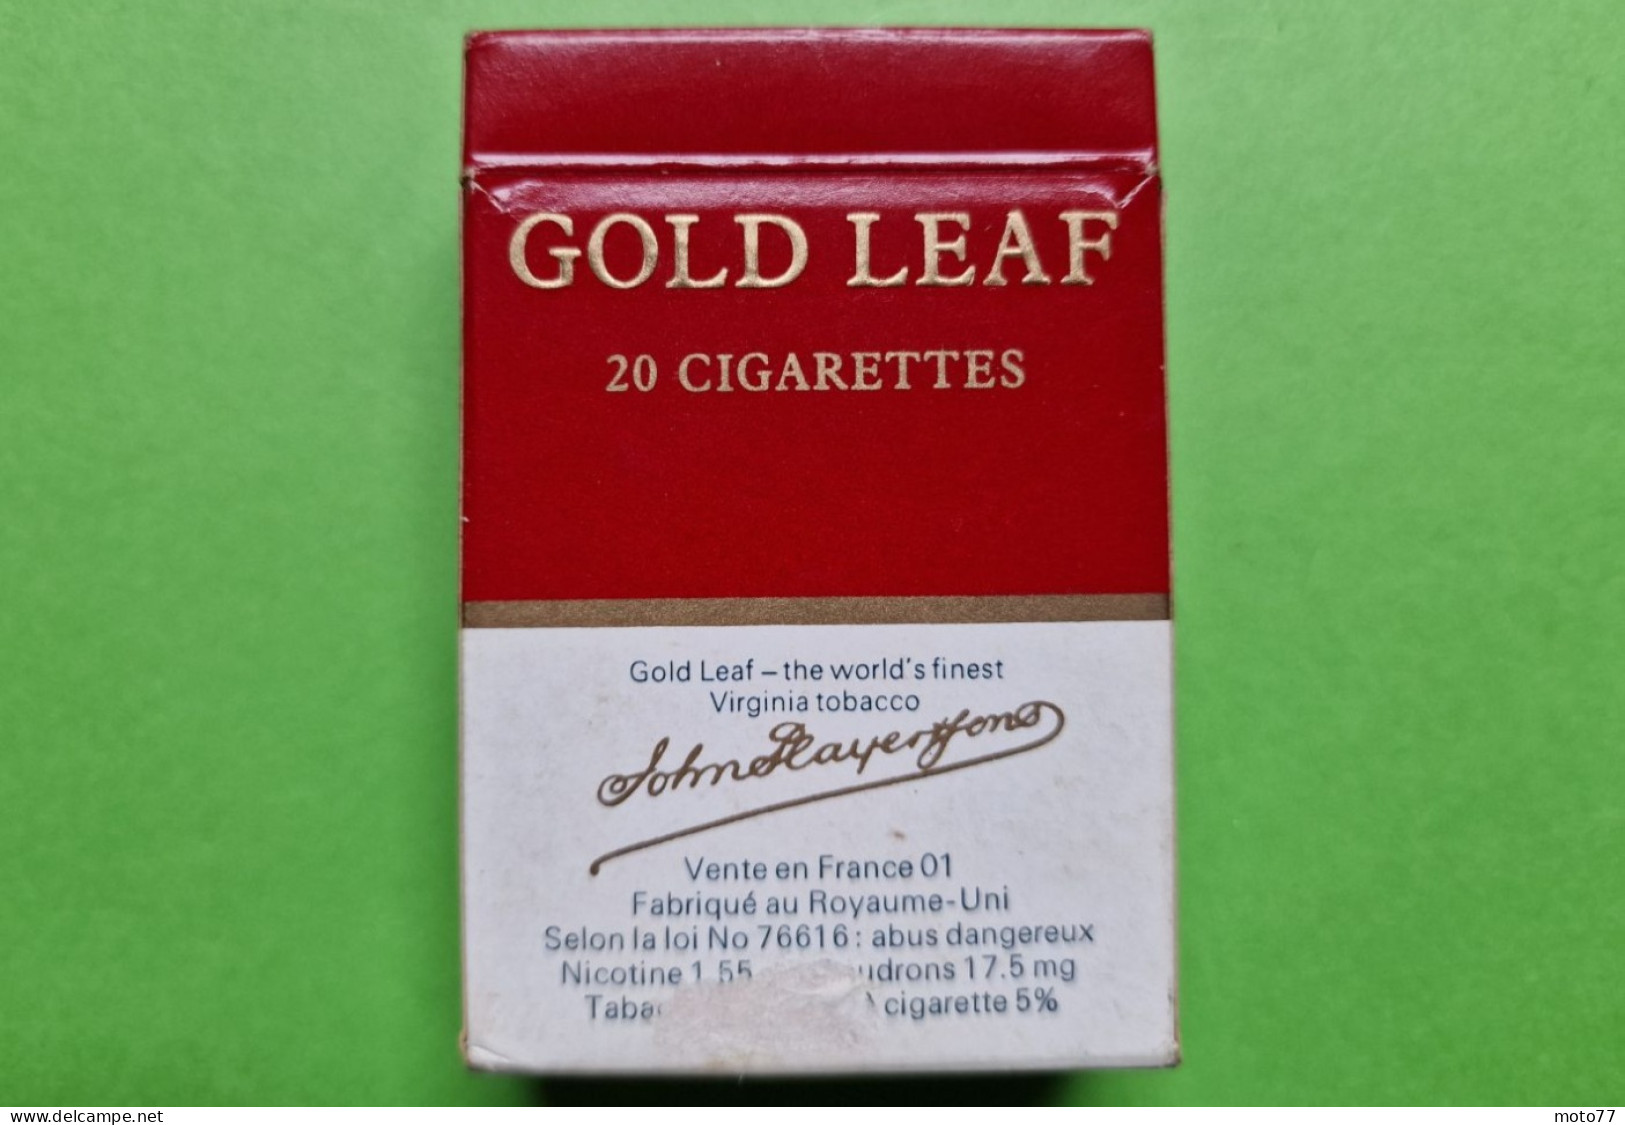 Ancien PAQUET De CIGARETTES Vide - GOLD LEAF - Marin - Vers 1980 - Etuis à Cigarettes Vides